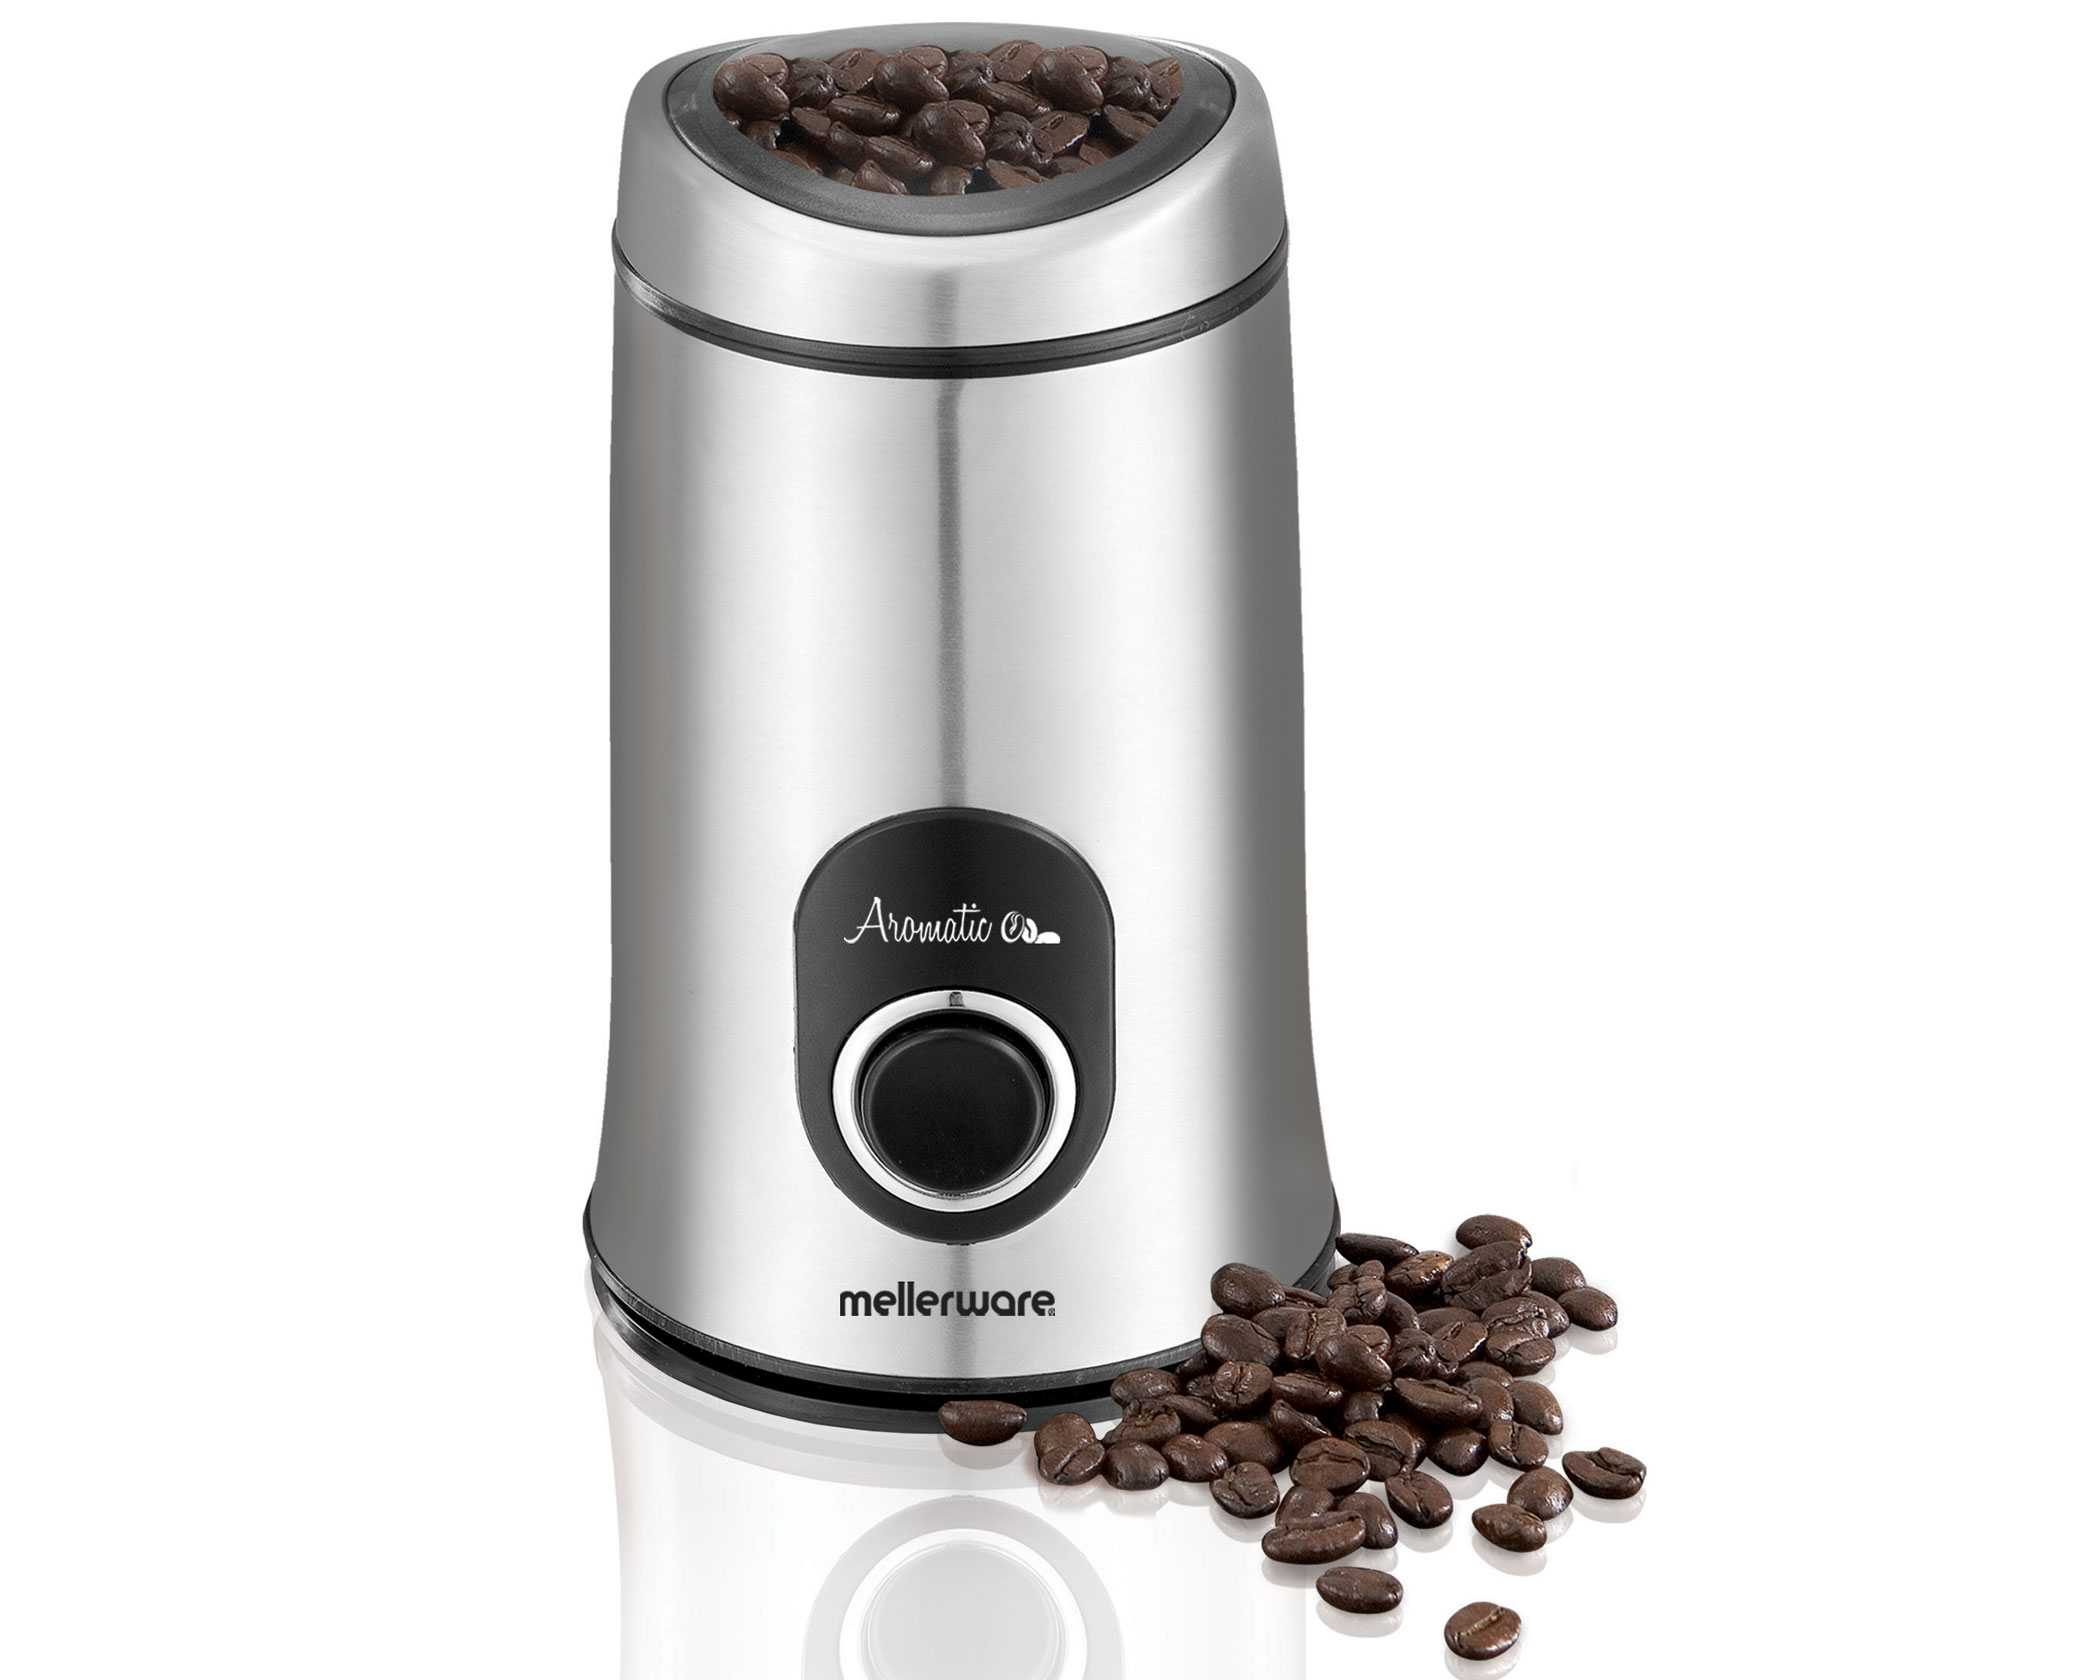 coffee bean grinder